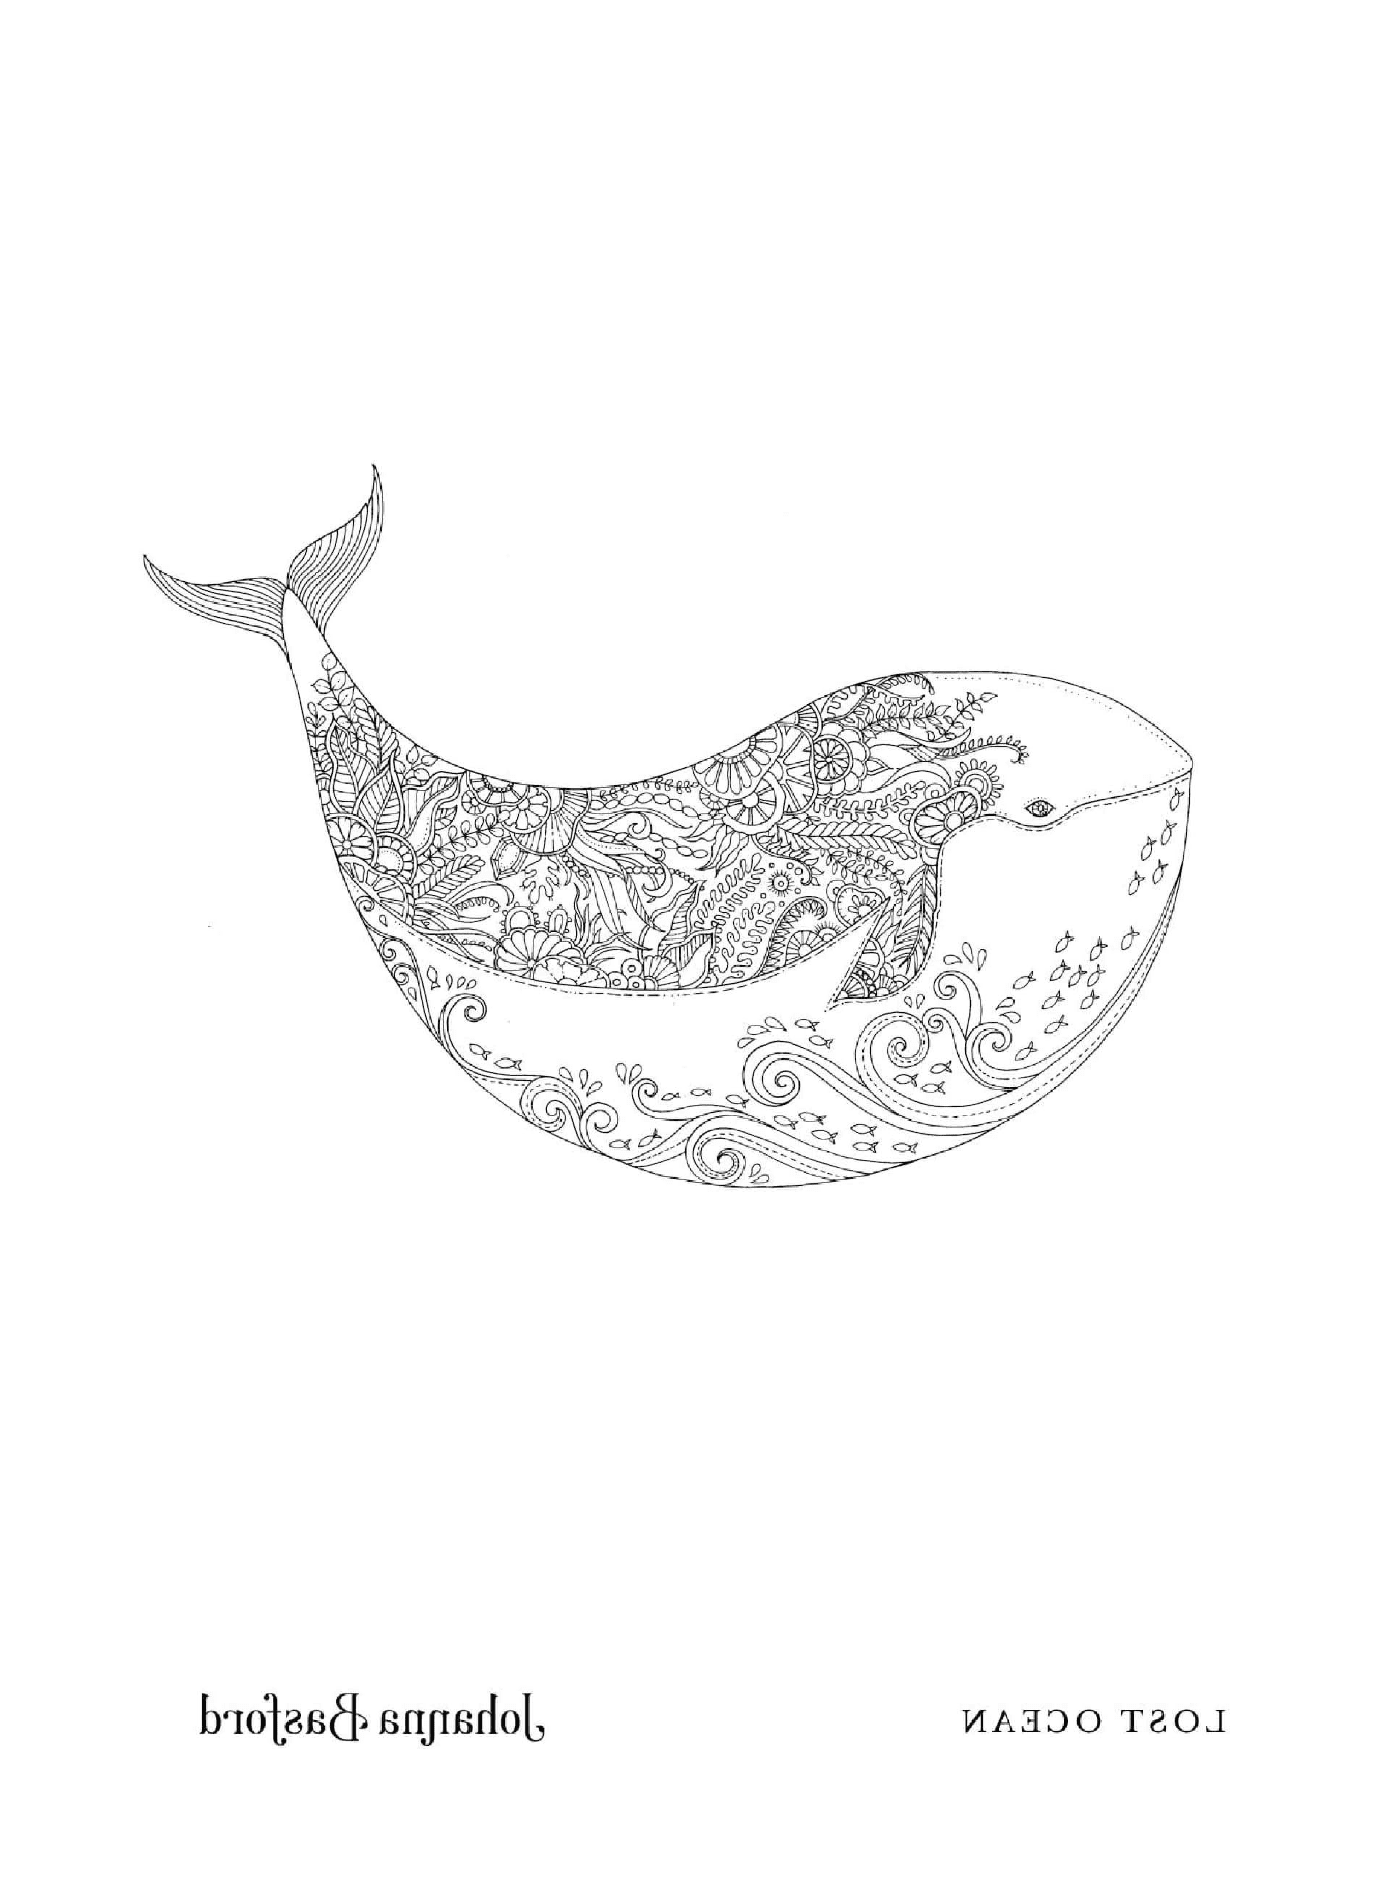  Una ballena con un patrón floral 